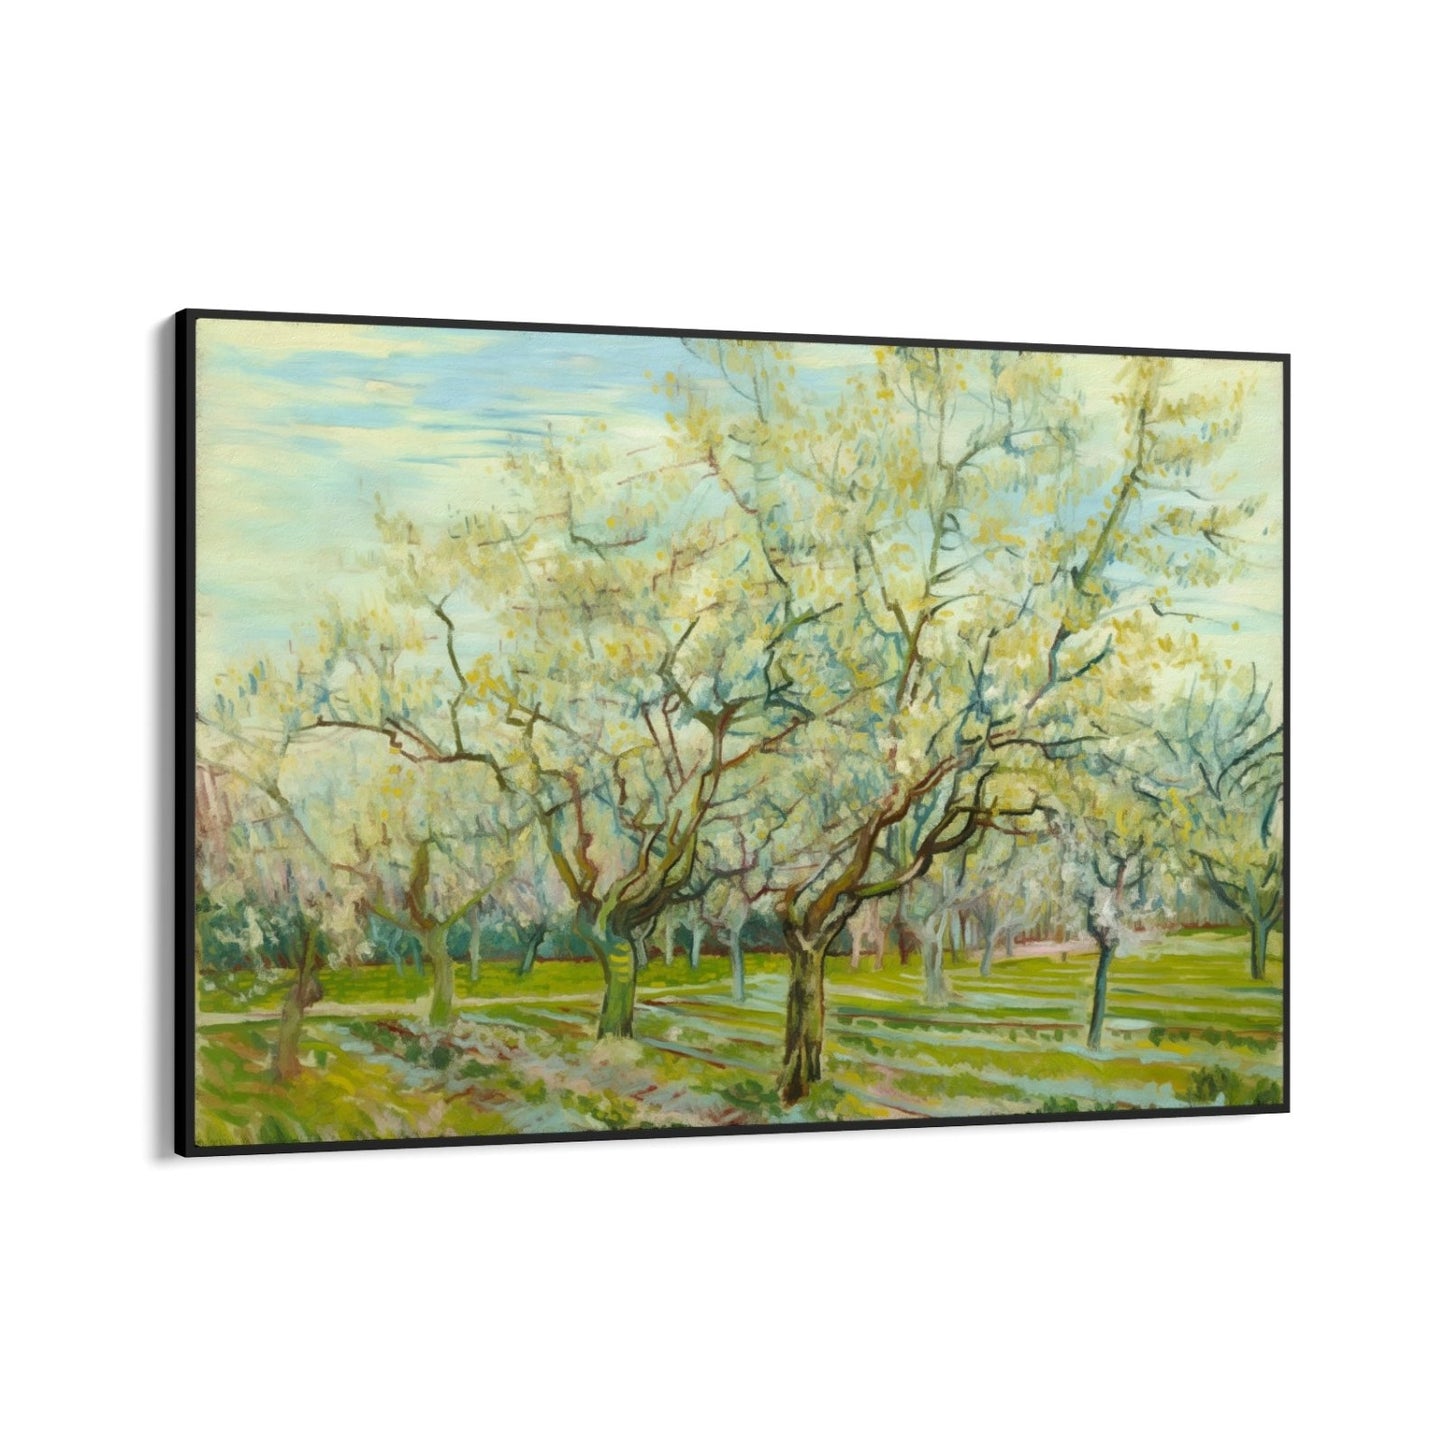 De witte boomgaard 1888, Vincent van Gogh